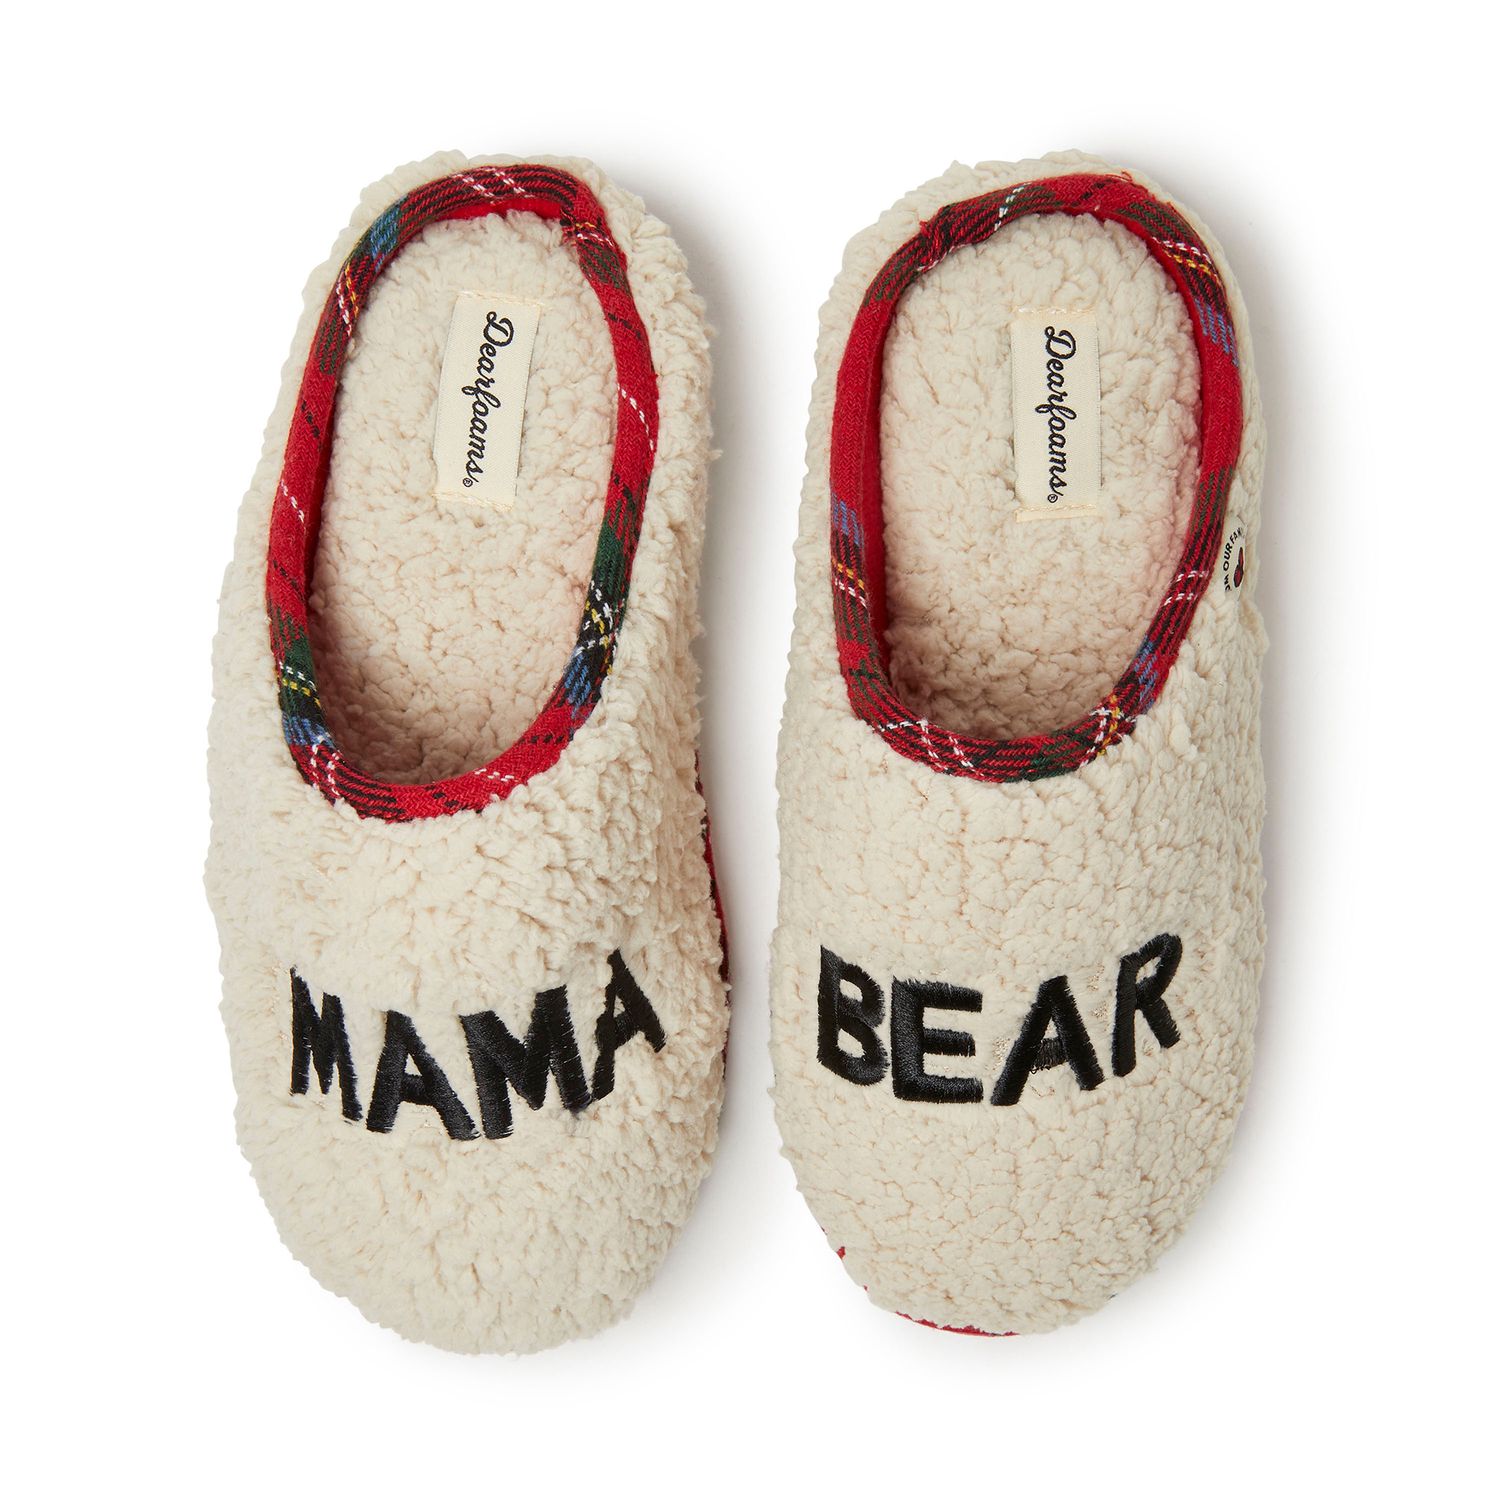 kohls dearfoam slippers